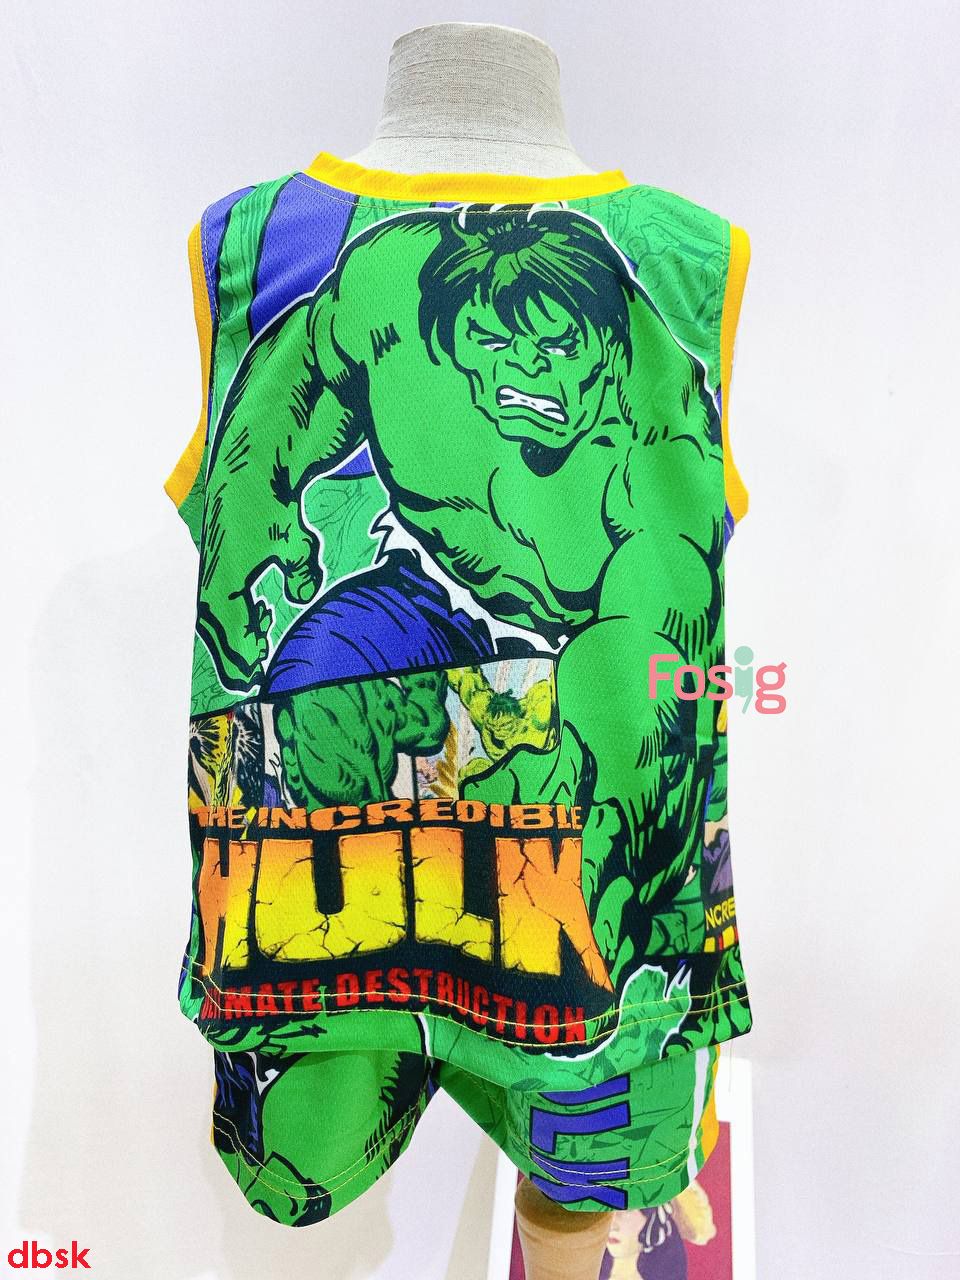  [16-19kg, 25-26kg] Set Đồ Bộ Ngắn 3 Lỗ Bé Trai SK - Hulk 